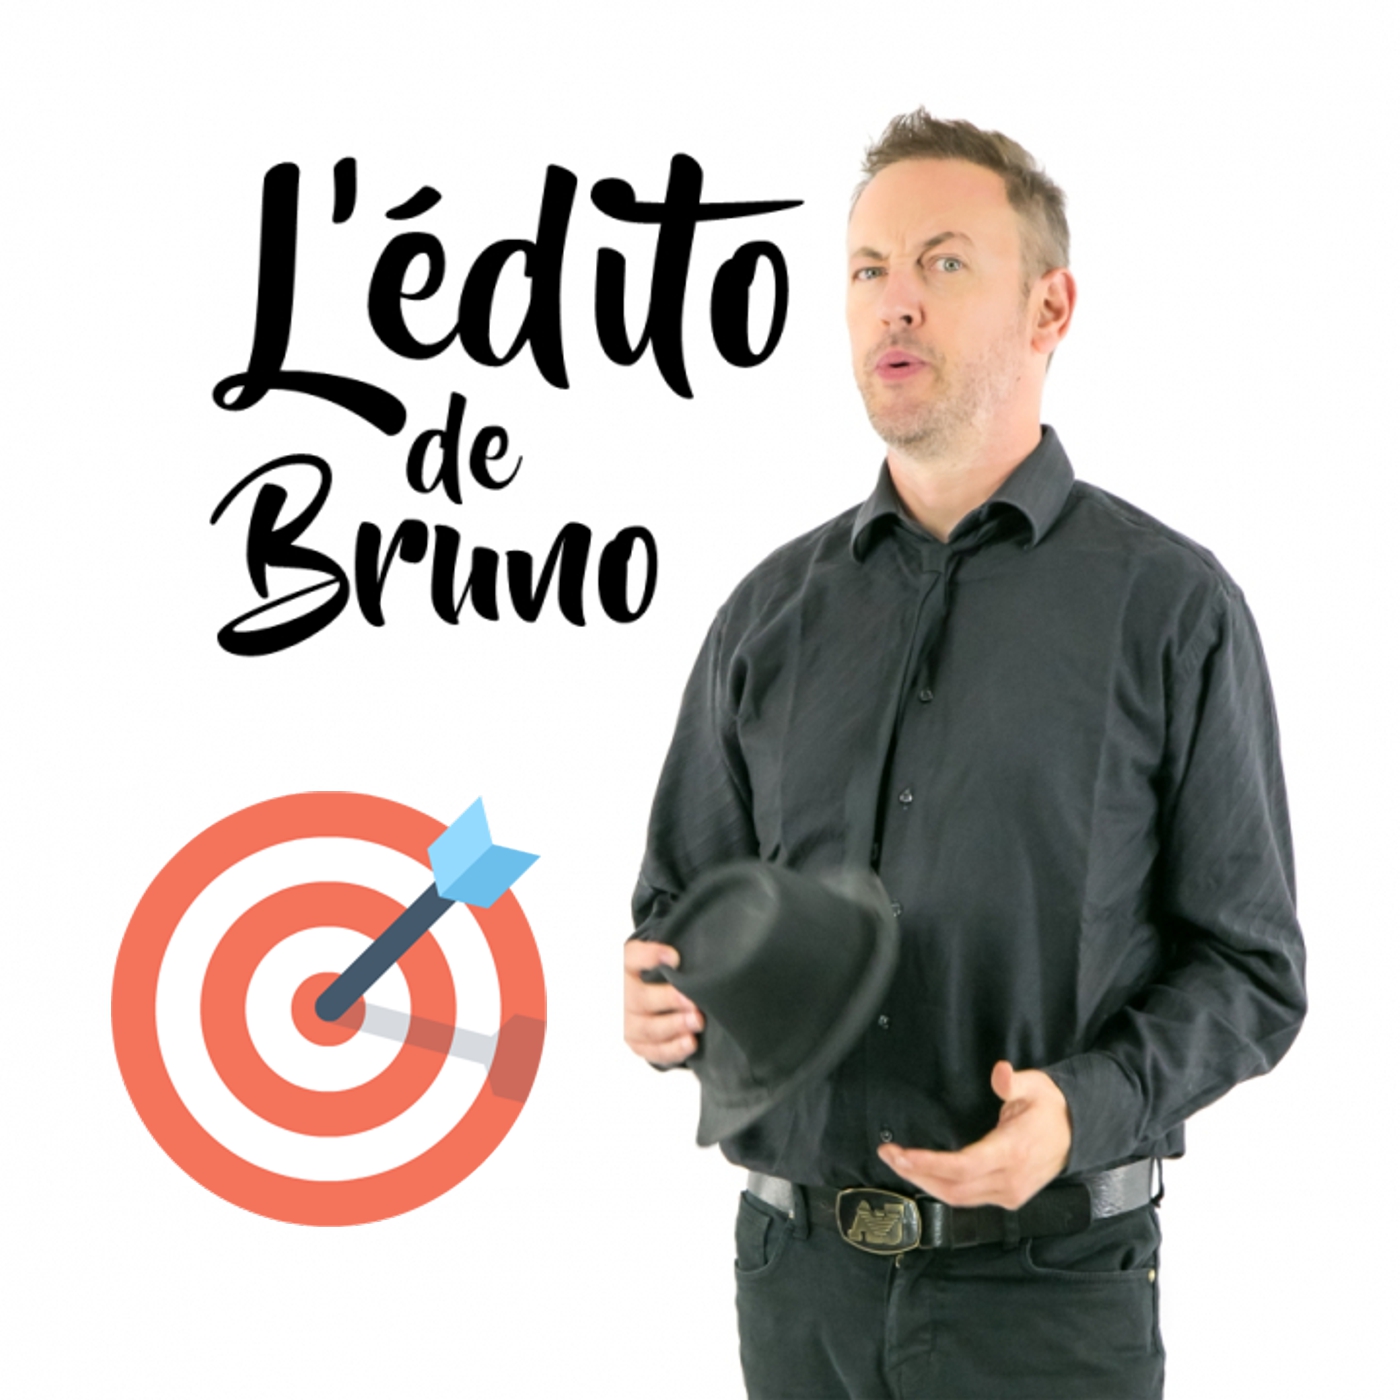 L'édito de Bruno du 07 01 2020 L'édito de Bruno de l'émission Tendance à m'plaire sur Radio G! L'édito de Bruno du 07 01 2020